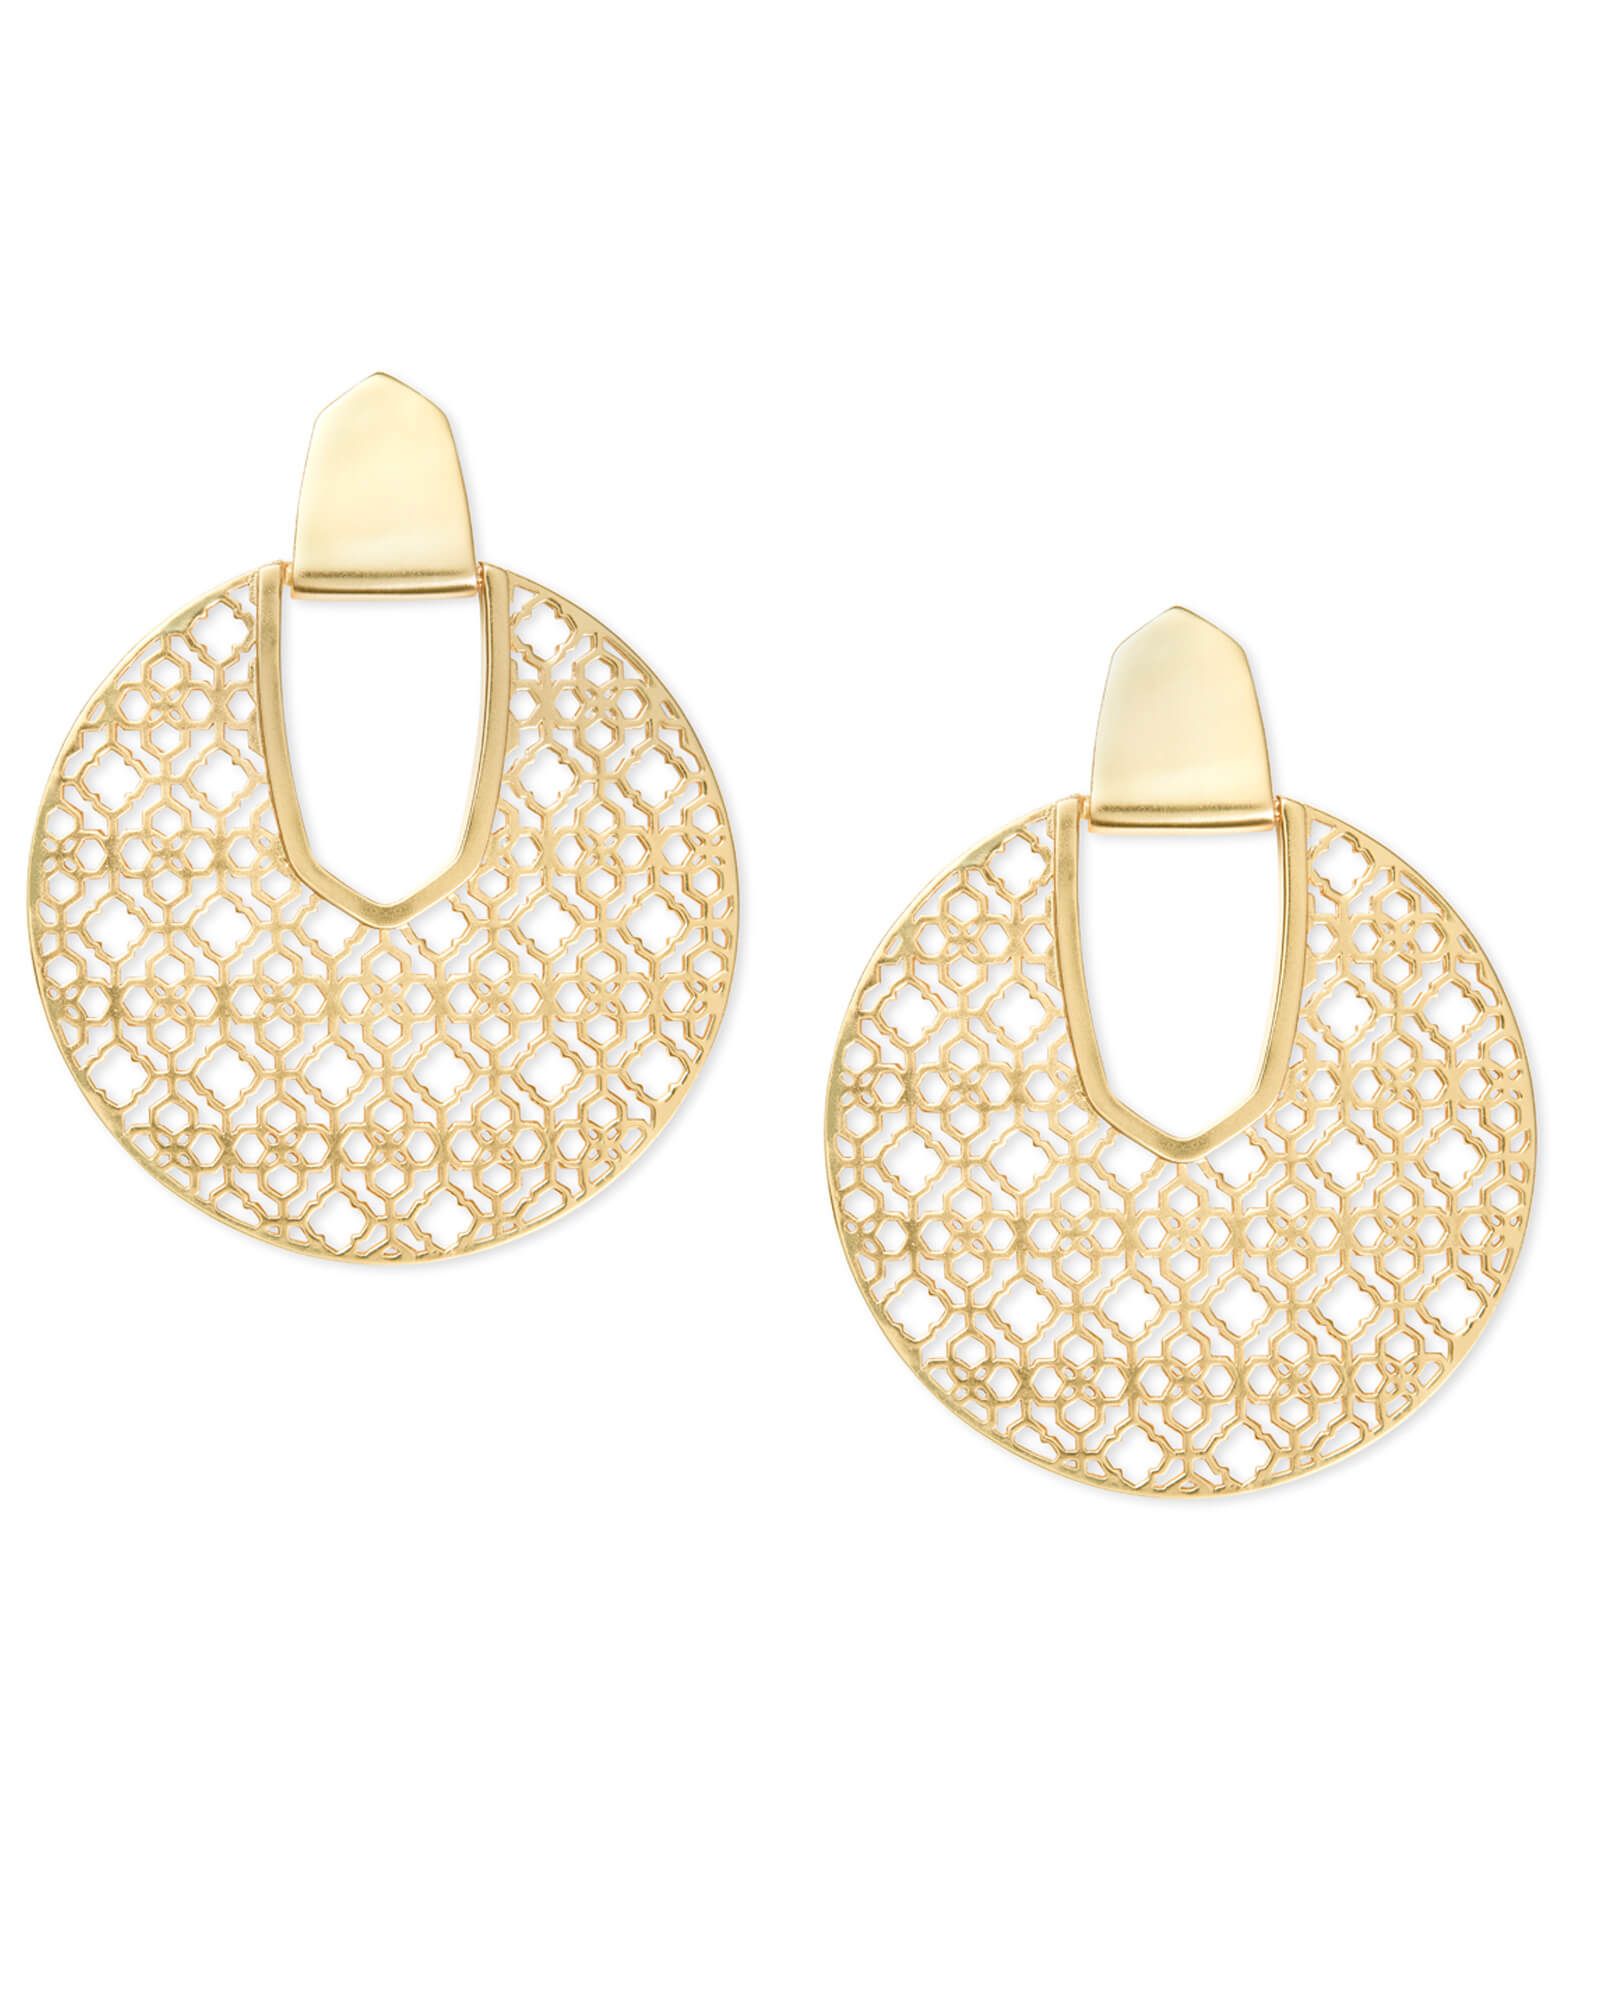 Diane Gold Statement Earrings in Gold Filigree | Kendra Scott